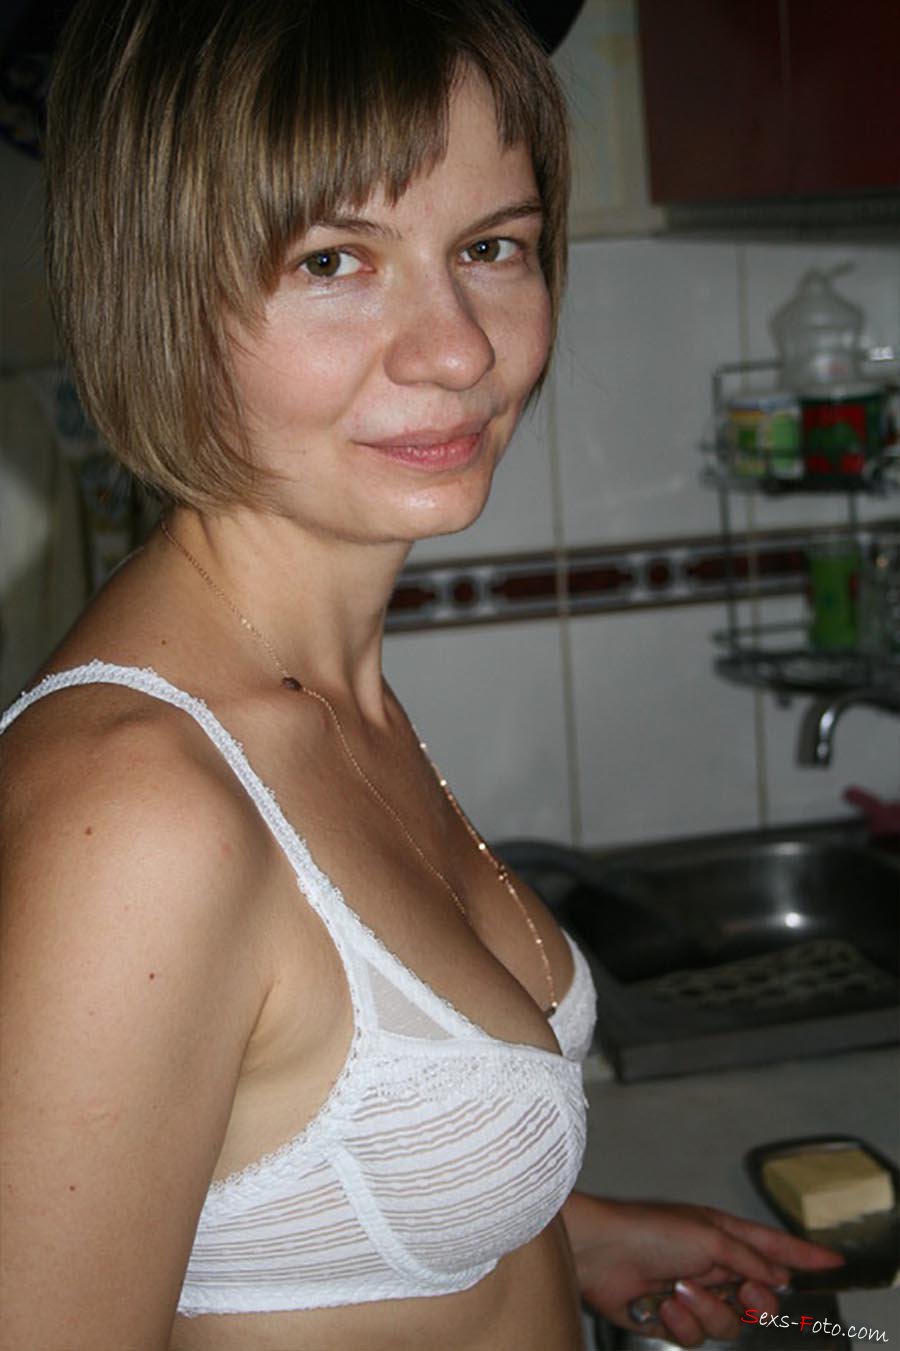 Голая замужняя женщина в ванной (фотографии)